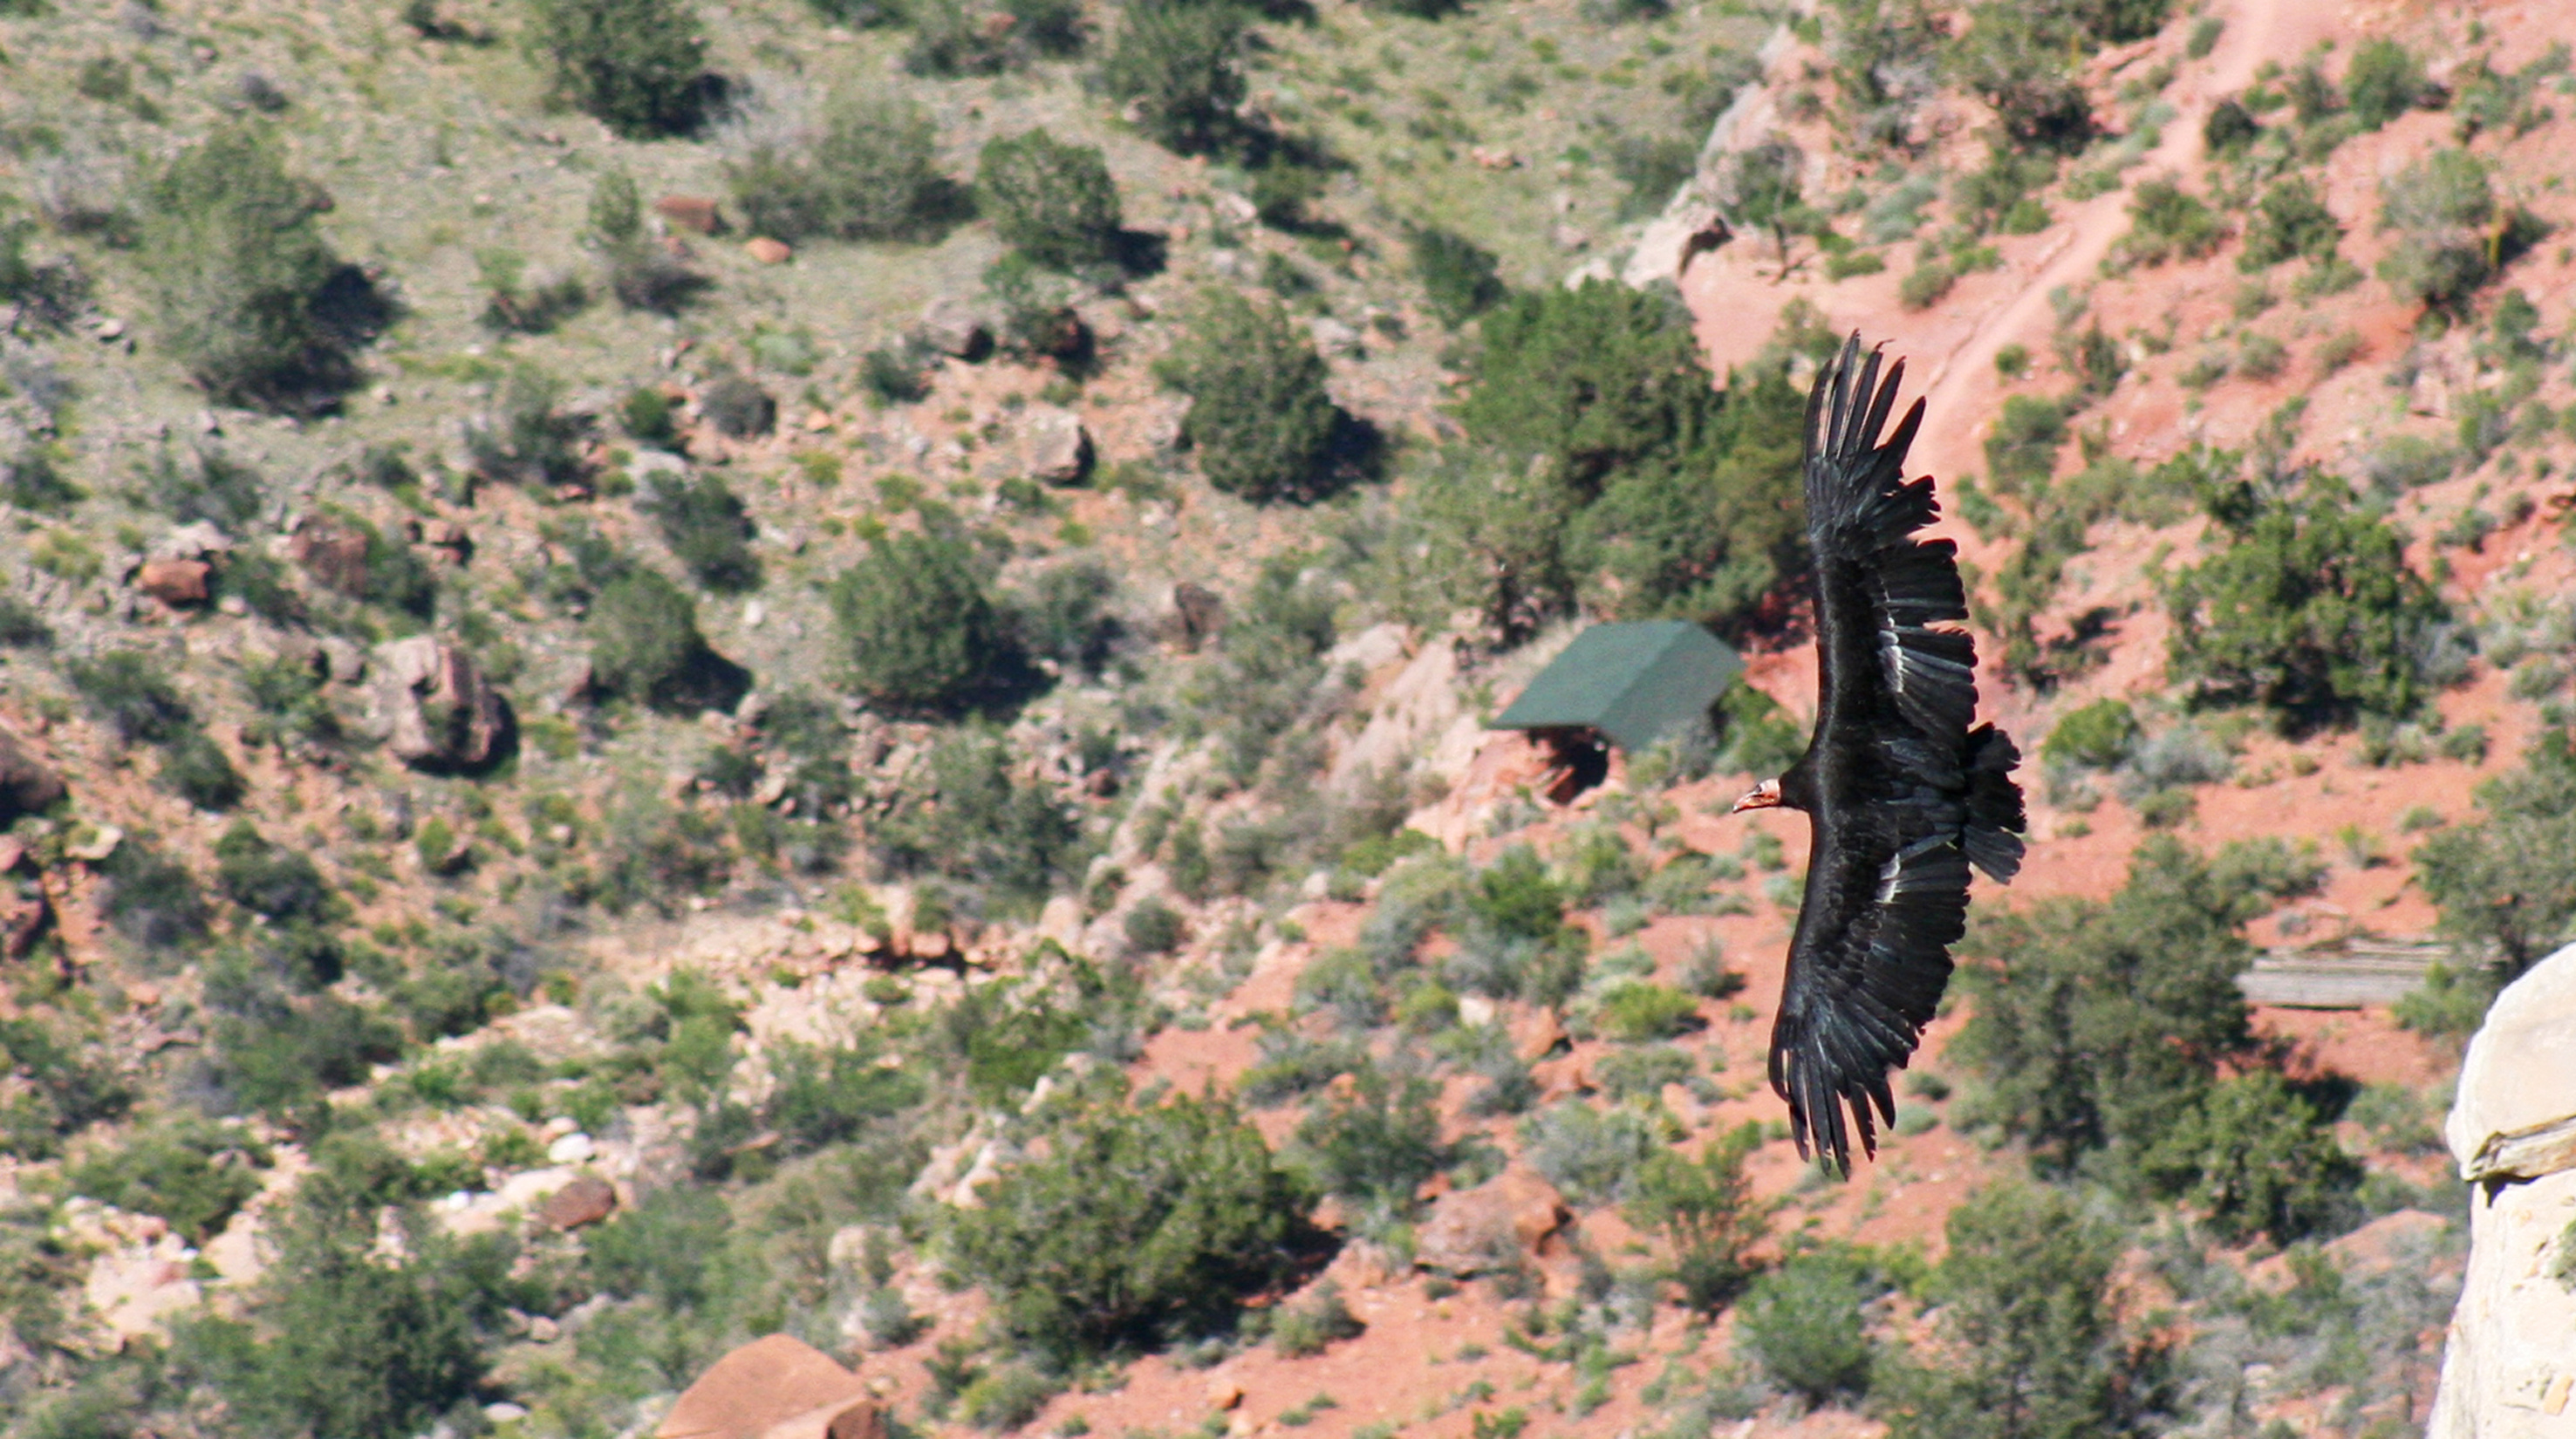 condor in flight